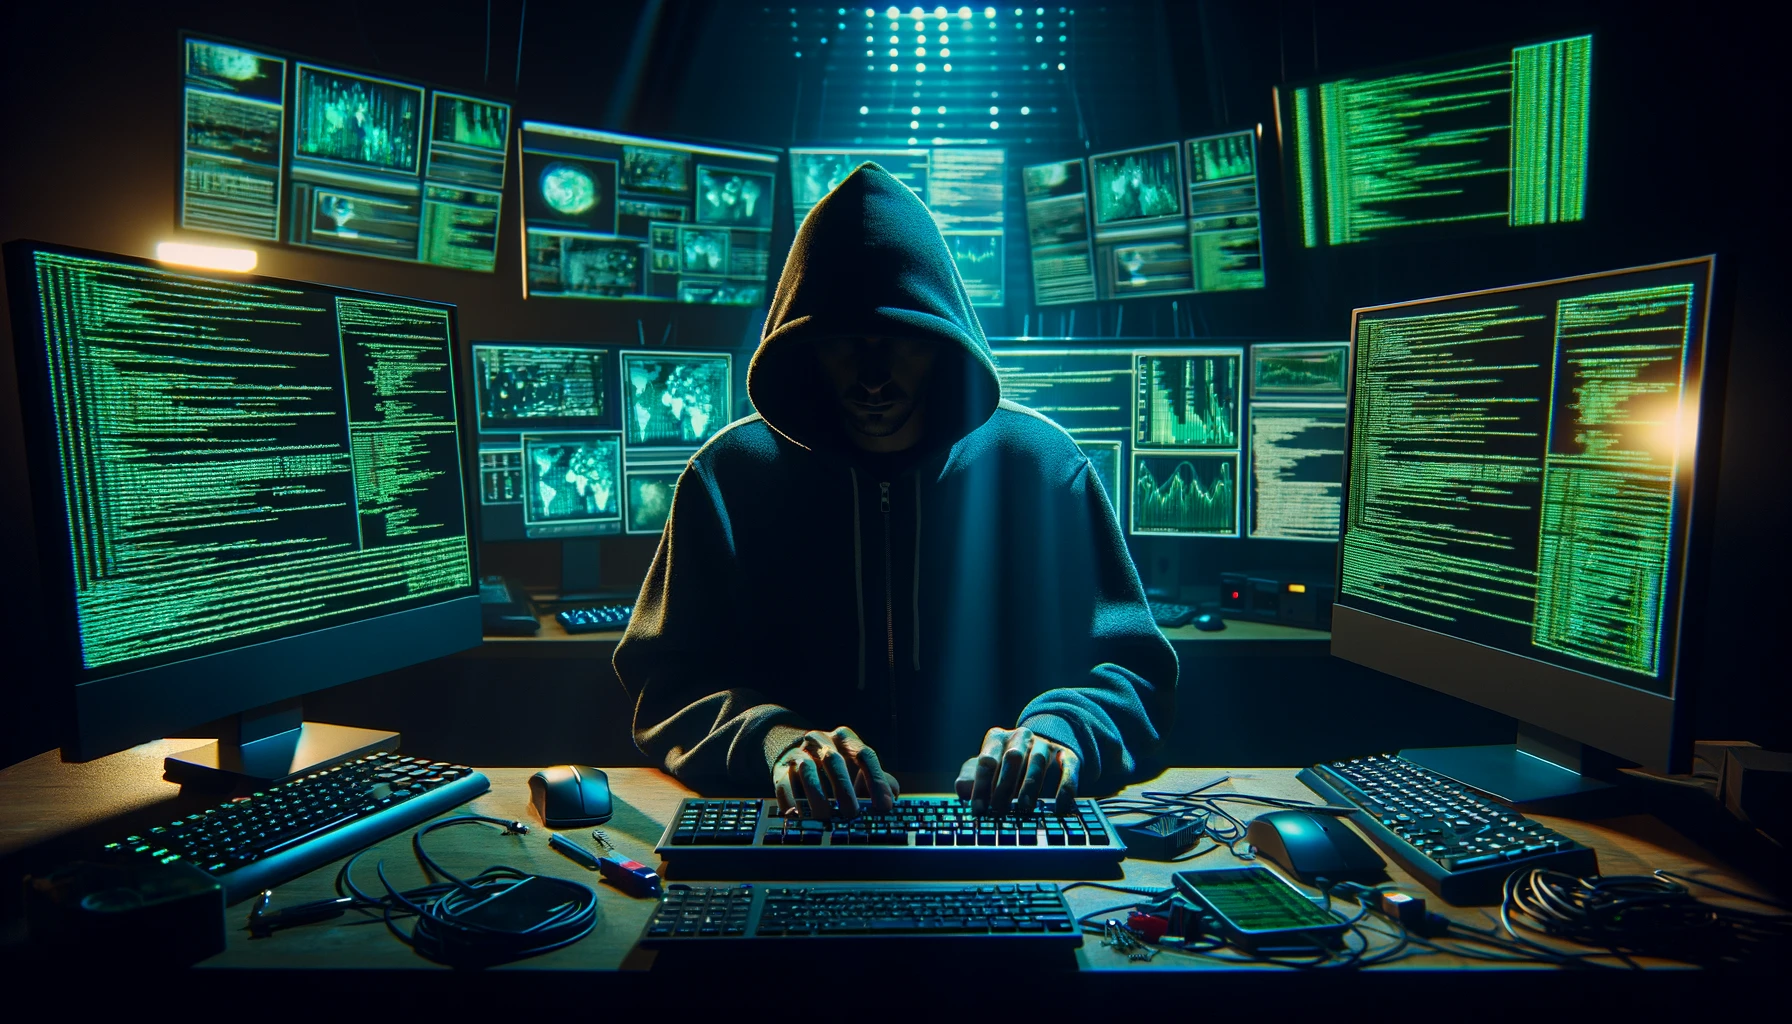 UwU Lend biedt beloning van $5 miljoen voor identificatie hacker na tweede aanval